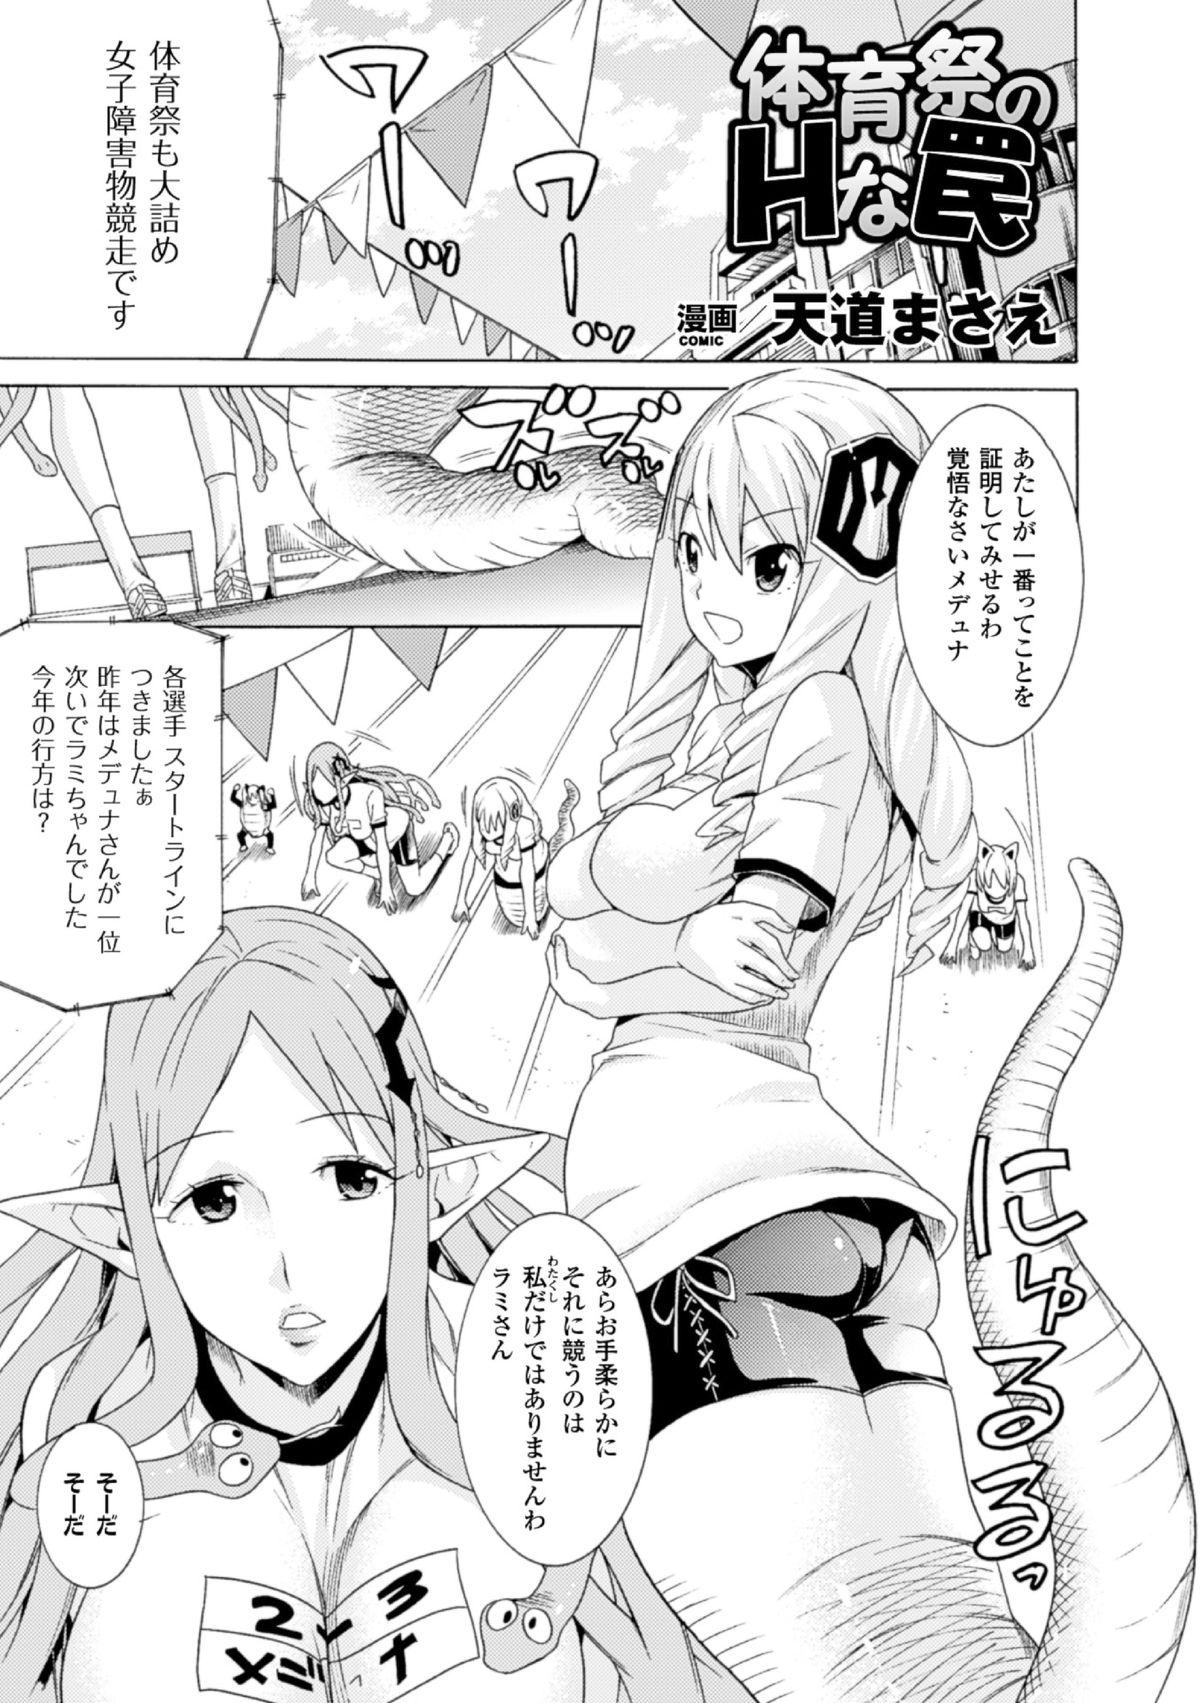 Ass Lick 2D Comic Magazine - Monster Musume ga Tsudou Ishuzoku Gakuen e Youkoso! Vol. 2 Jizz - Page 5